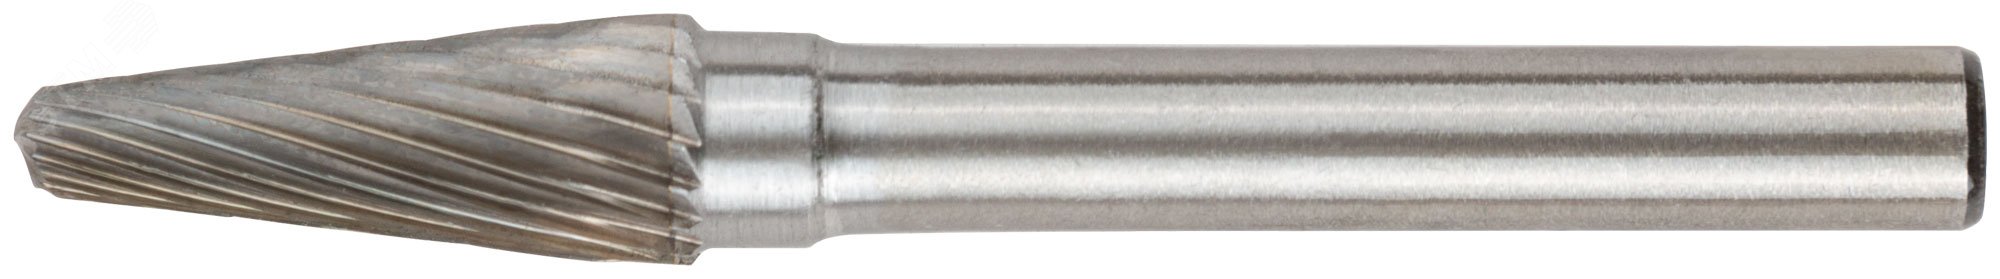 Шарошка карбидная Профи, штифт 6 мм, коническая с закруглением 36595 FIT - превью